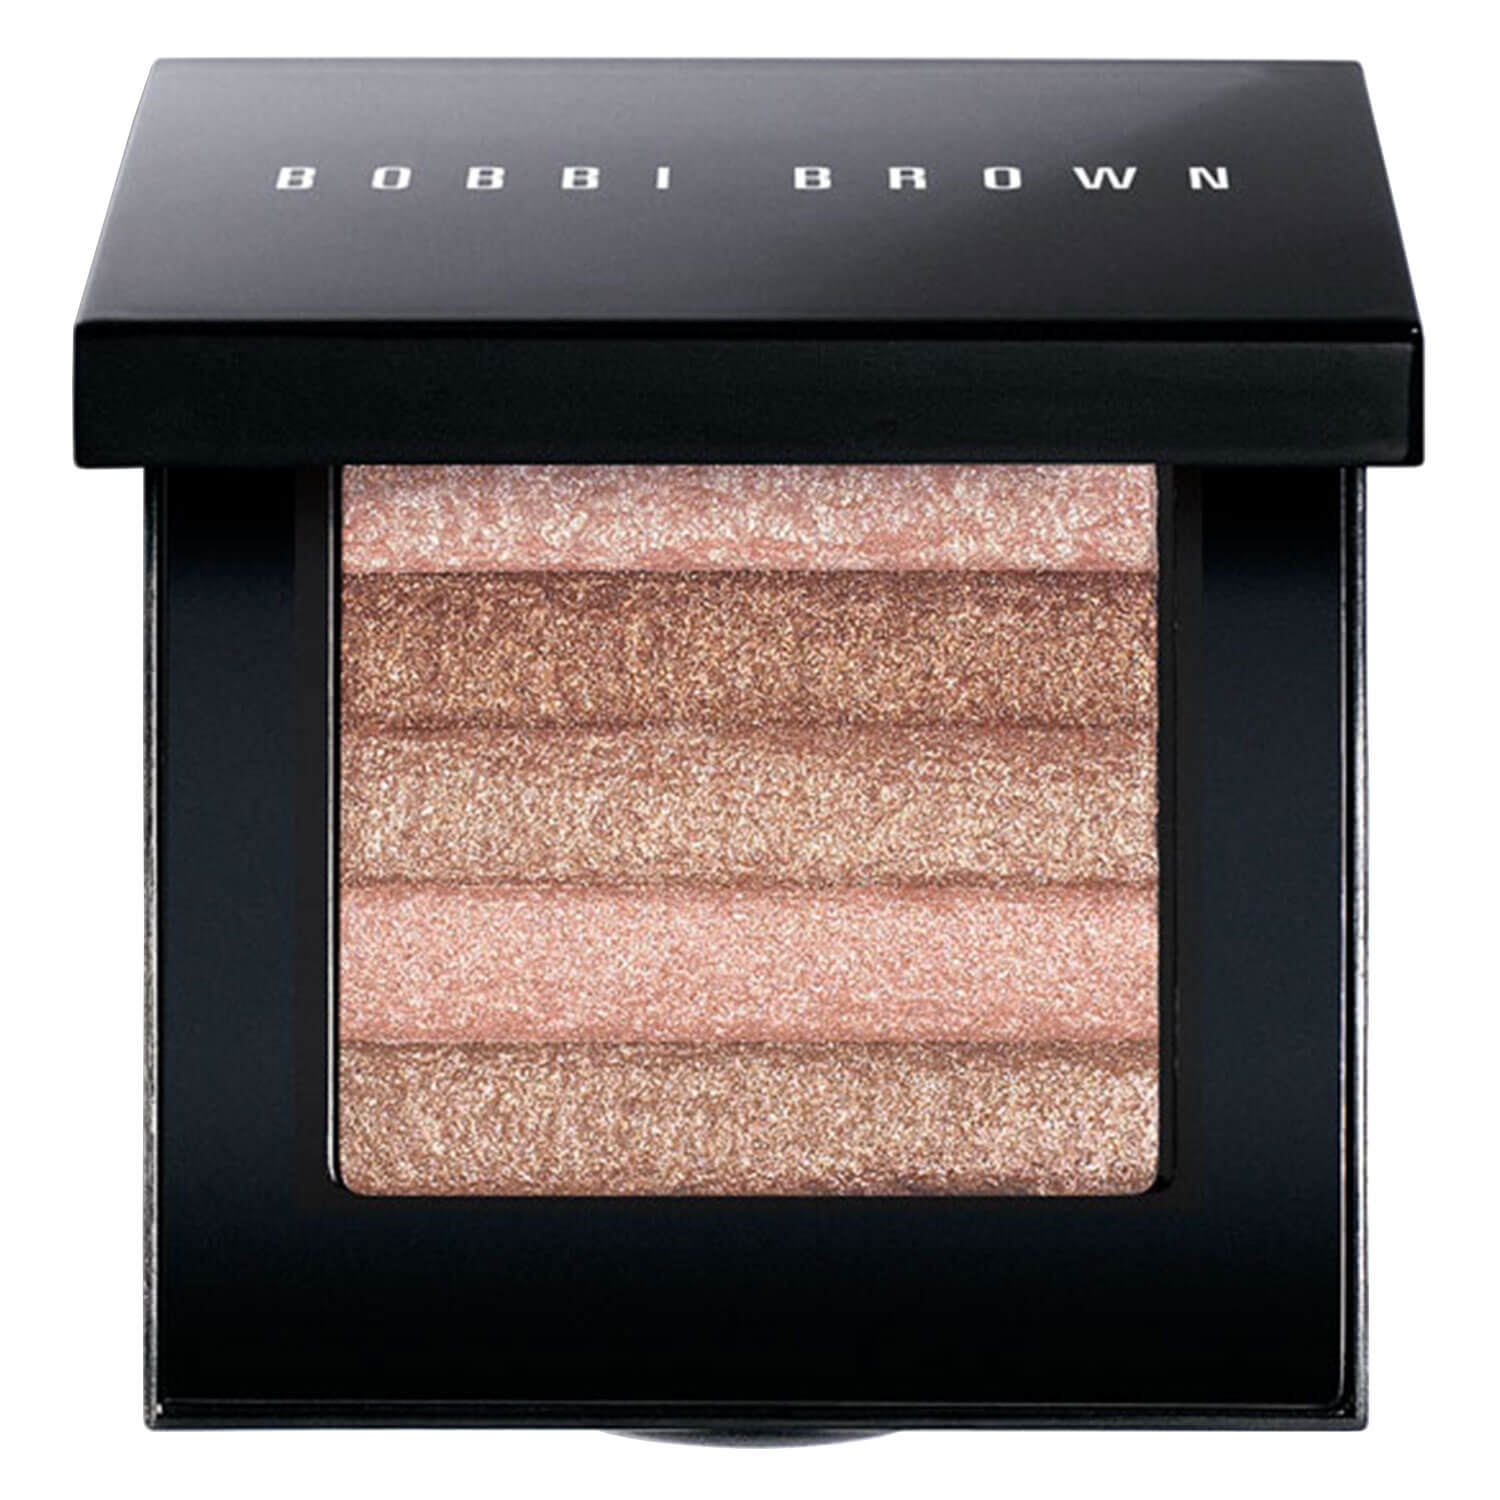 Produktbild von BB Highlight & Glow - Shimmerbrick Pink Quartz